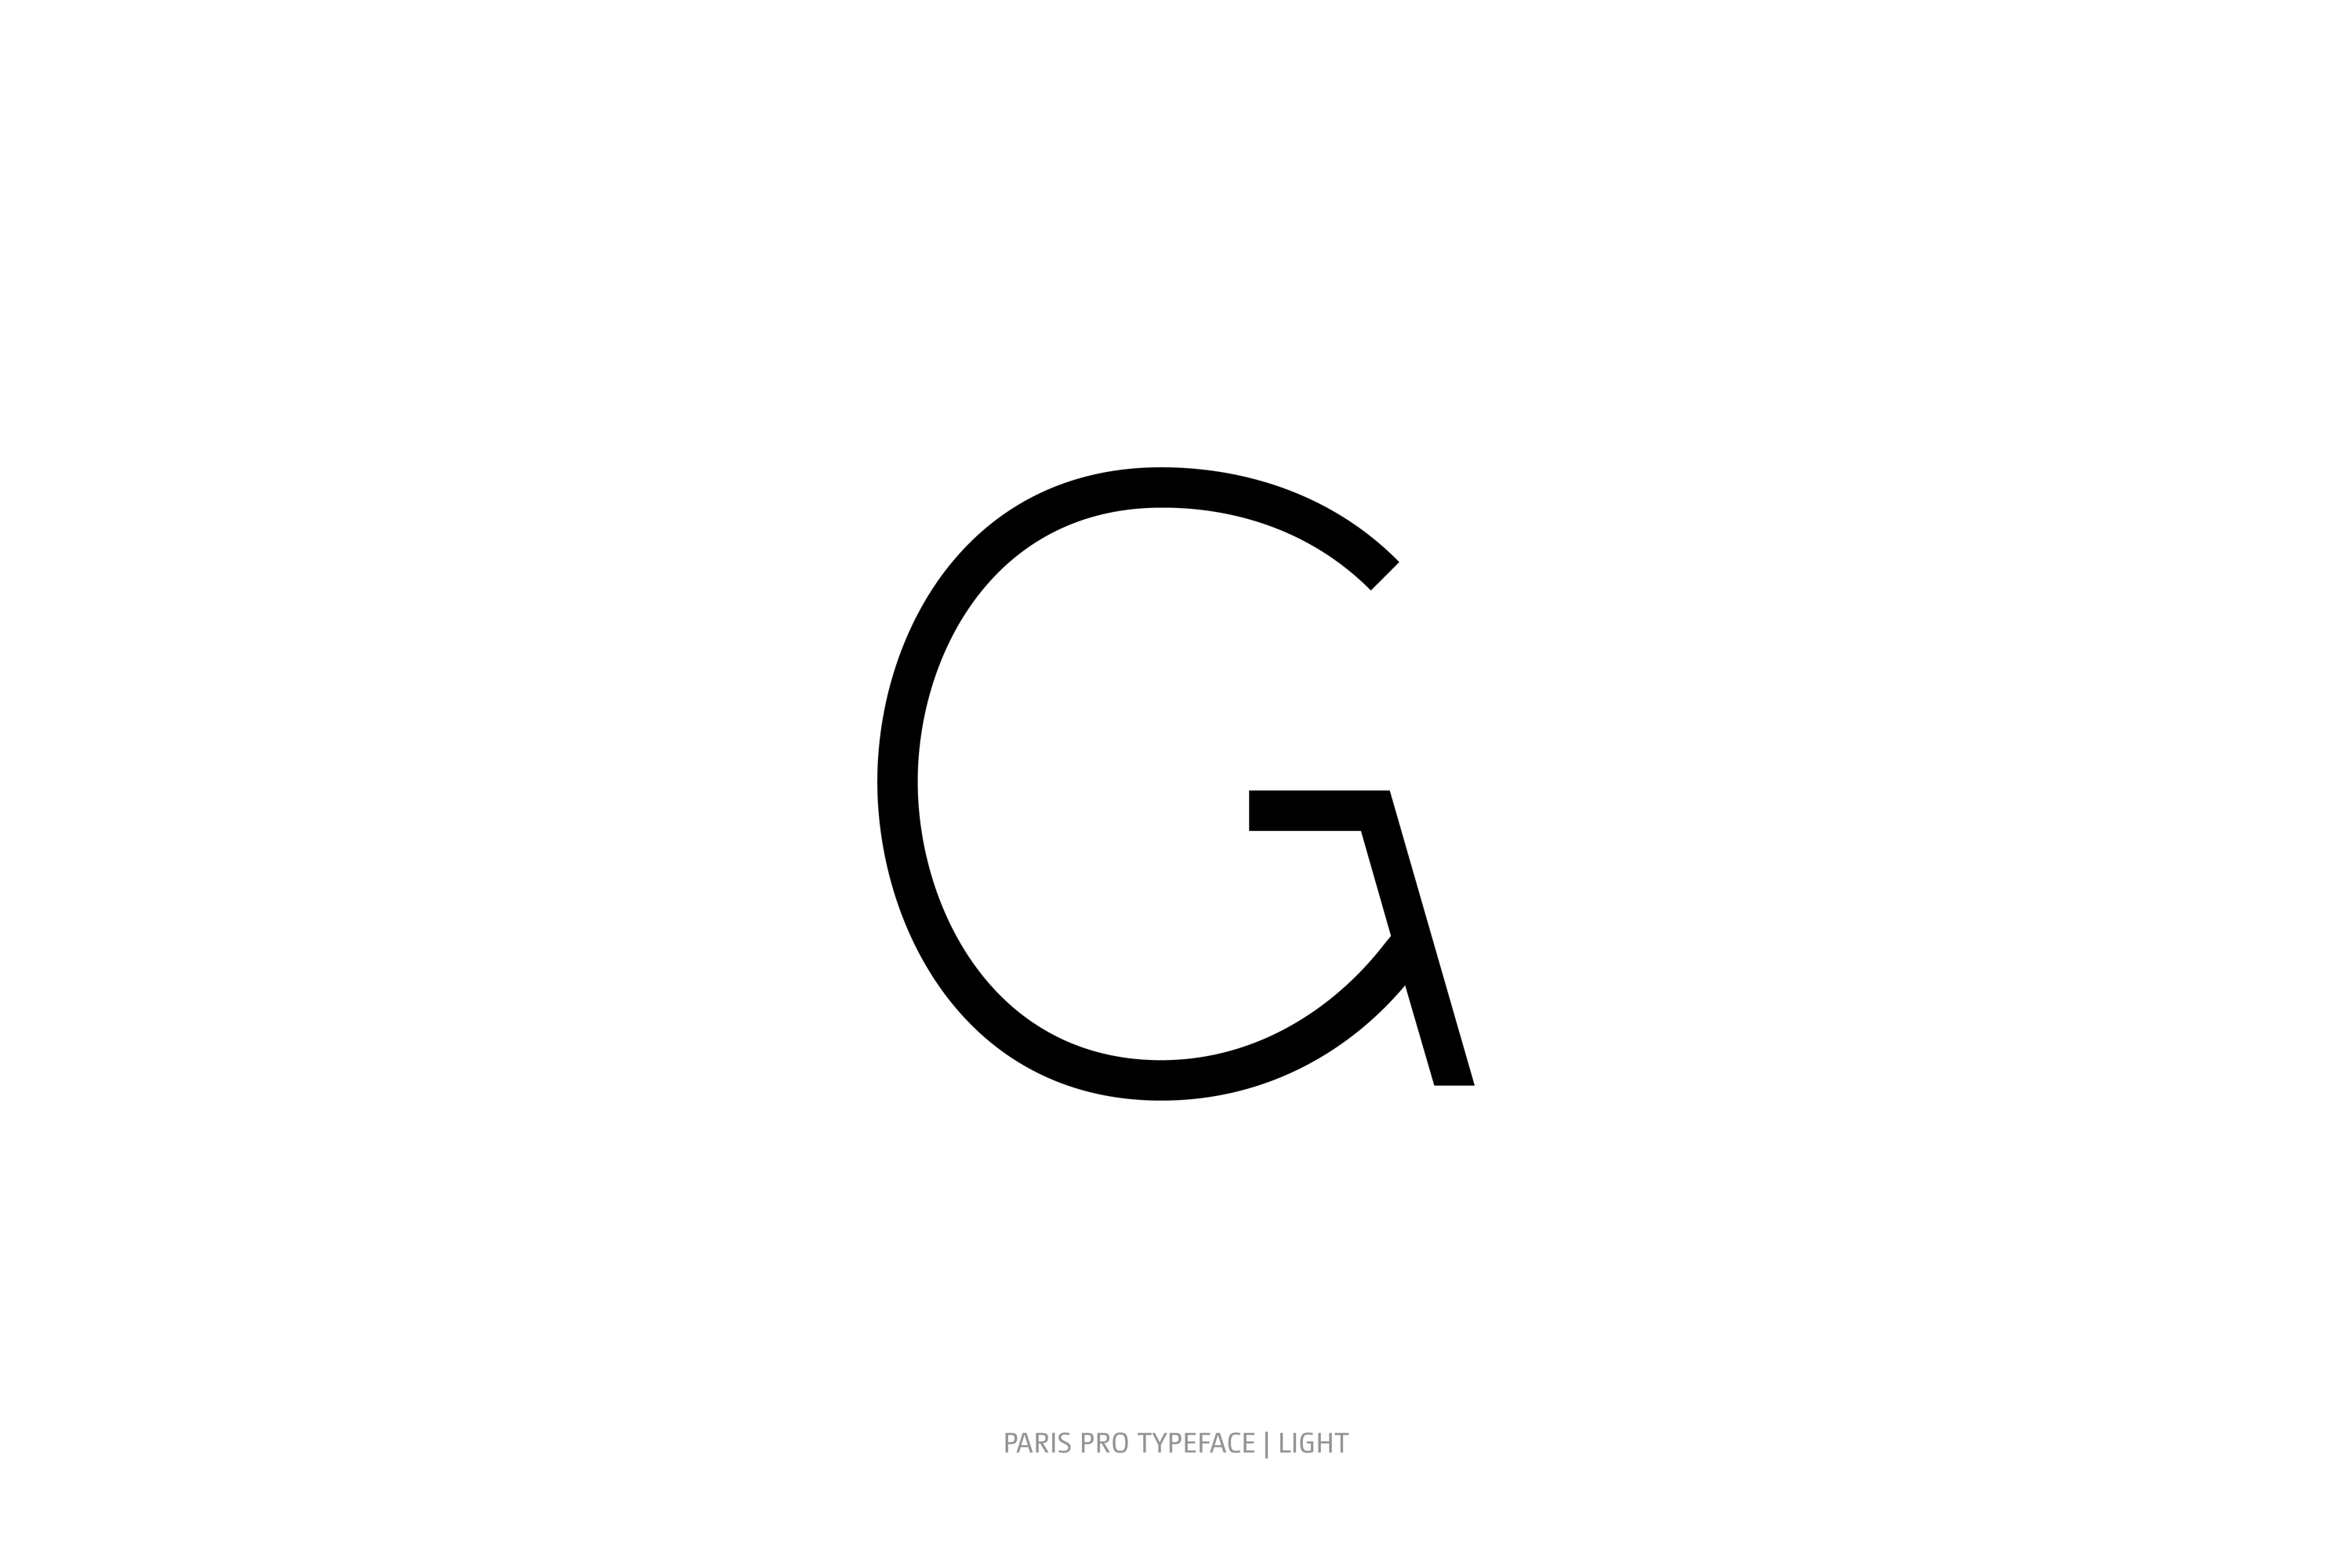 Paris Pro Typeface Light Style G